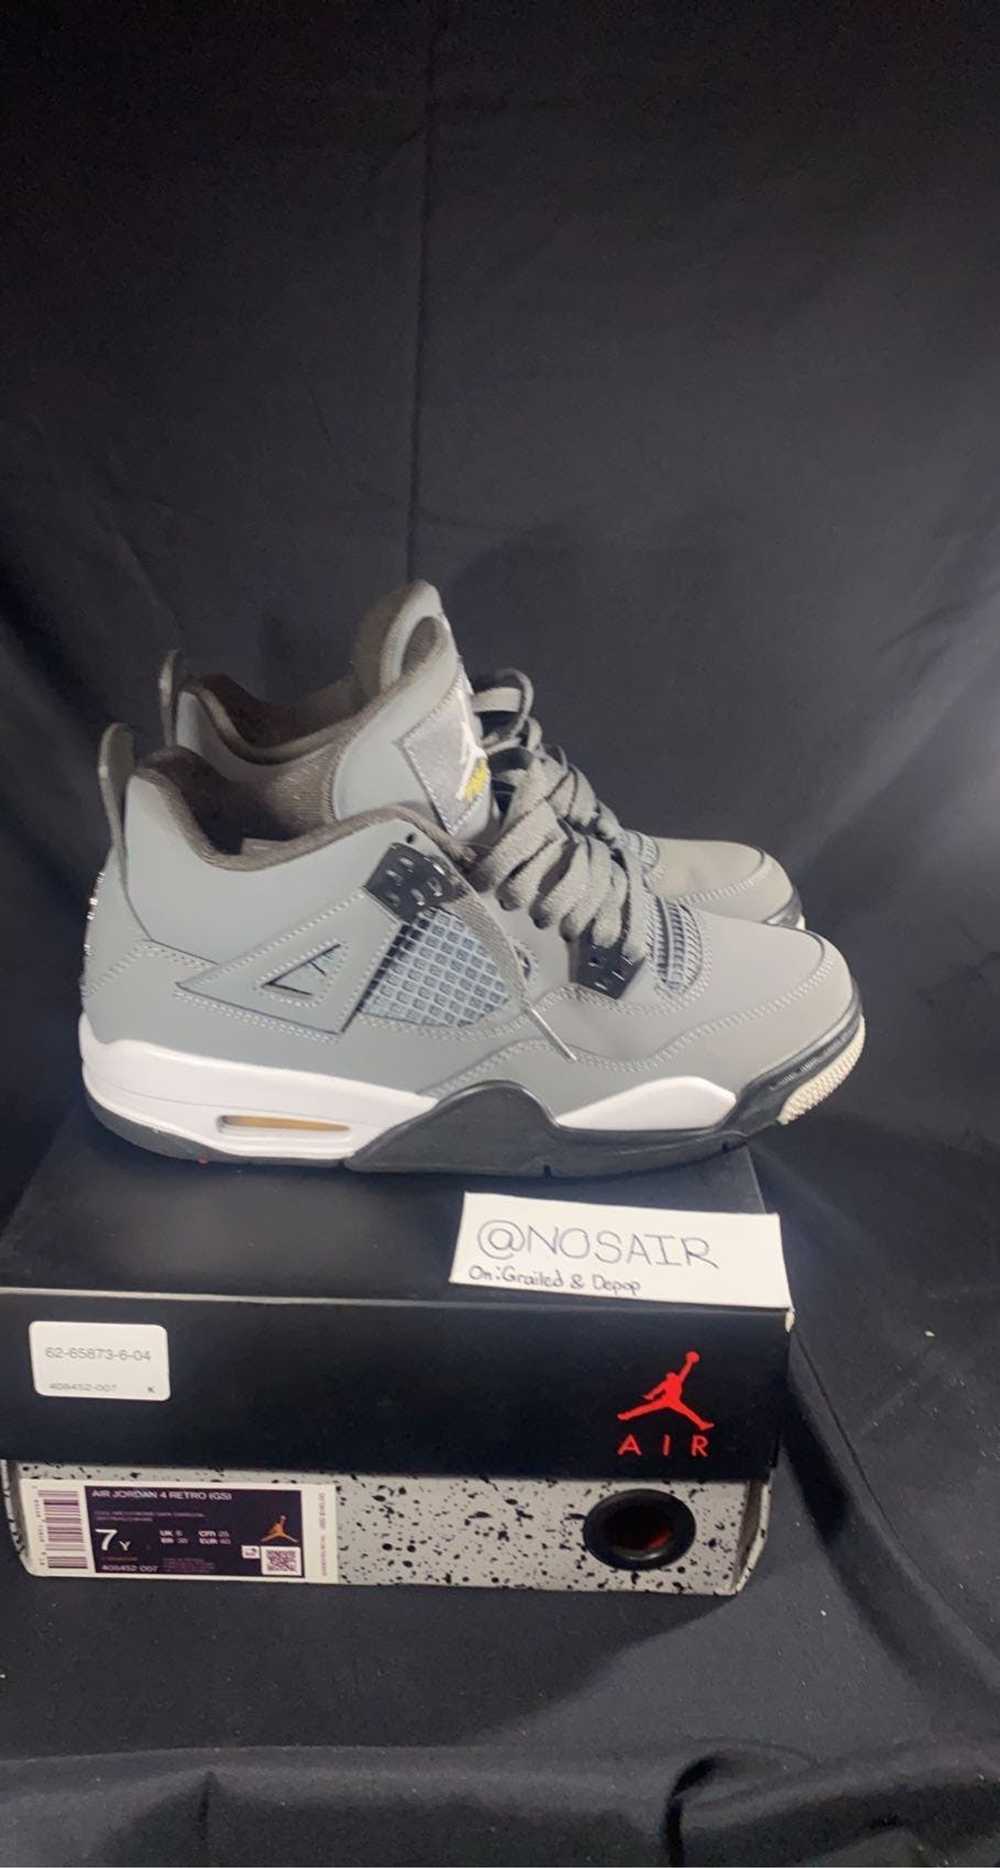 Jordan Brand × Nike 2019 Jordan 4 Cool Grey - image 4